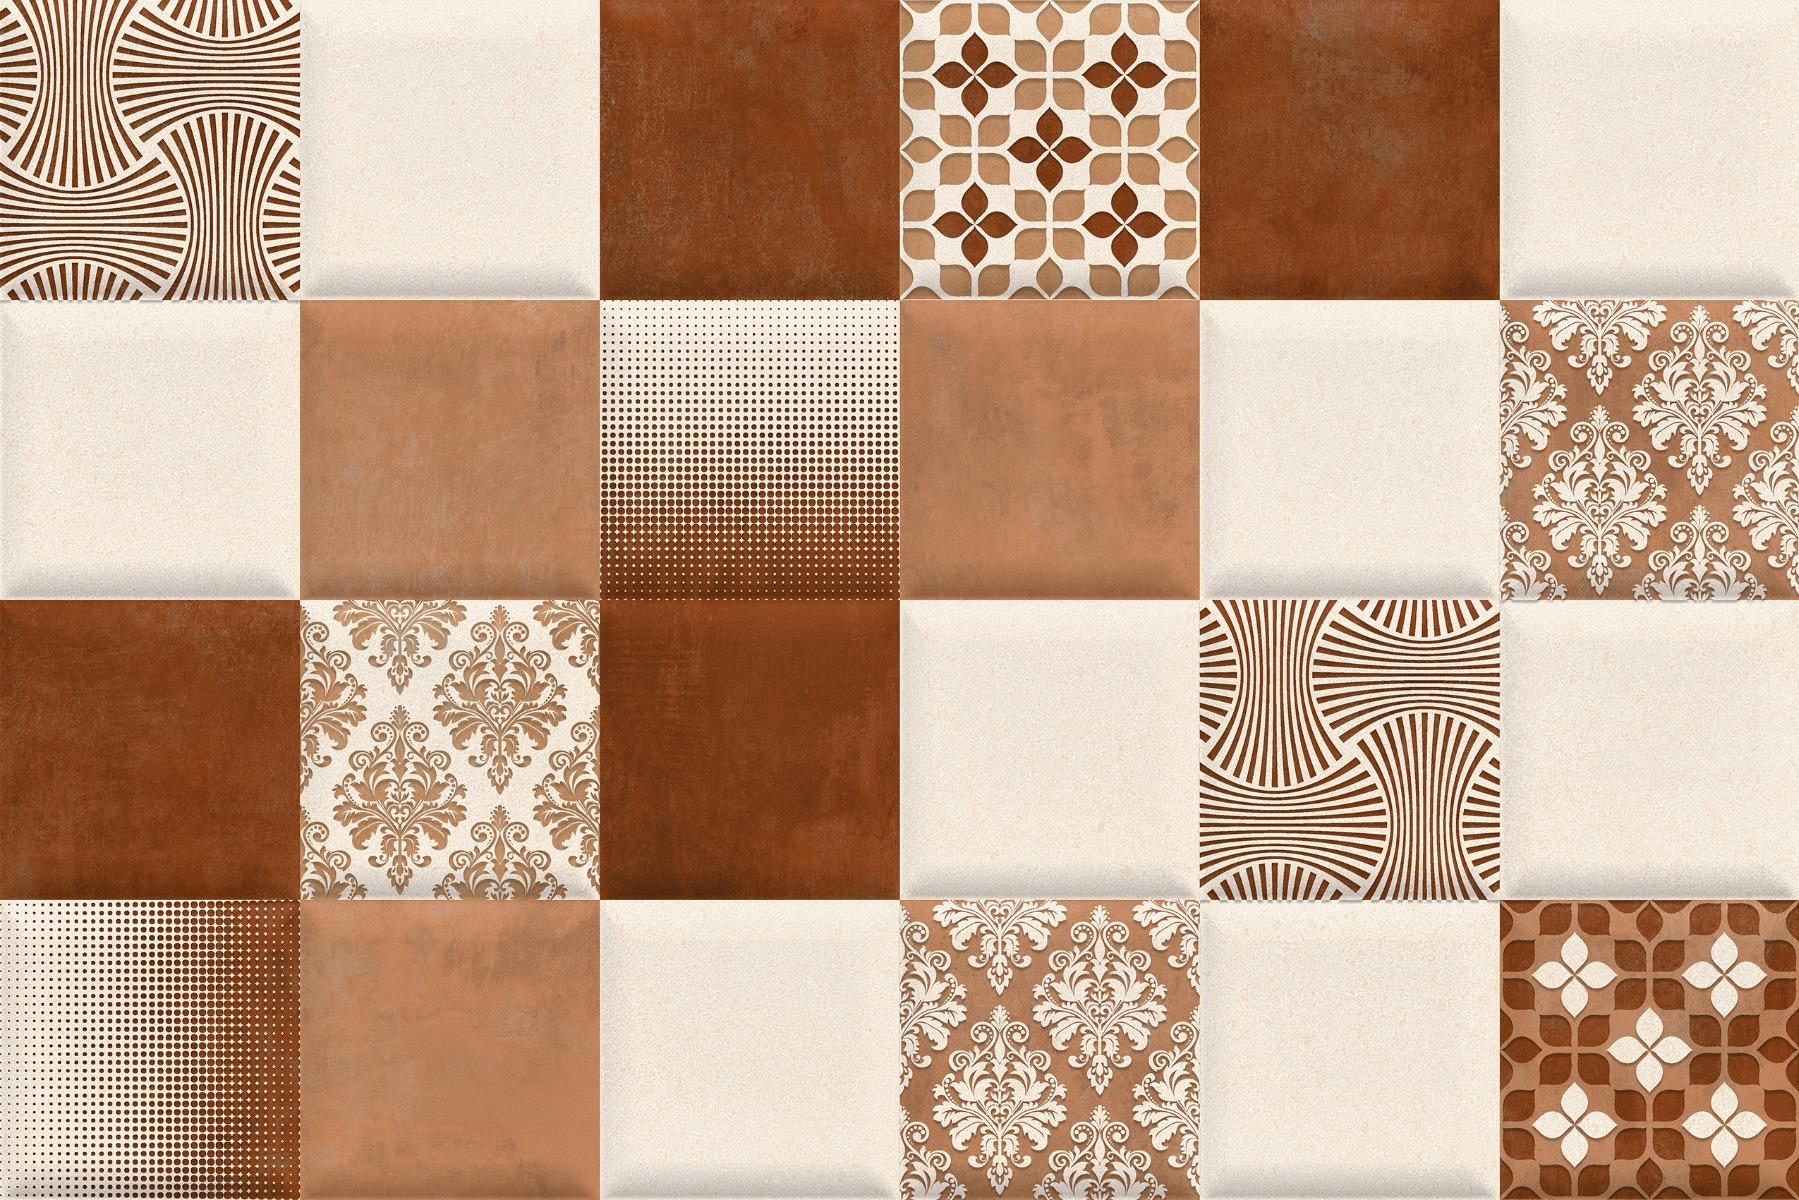 Flower Tiles for Bathroom Tiles, Kitchen Tiles, Accent Tiles, Dining Room Tiles